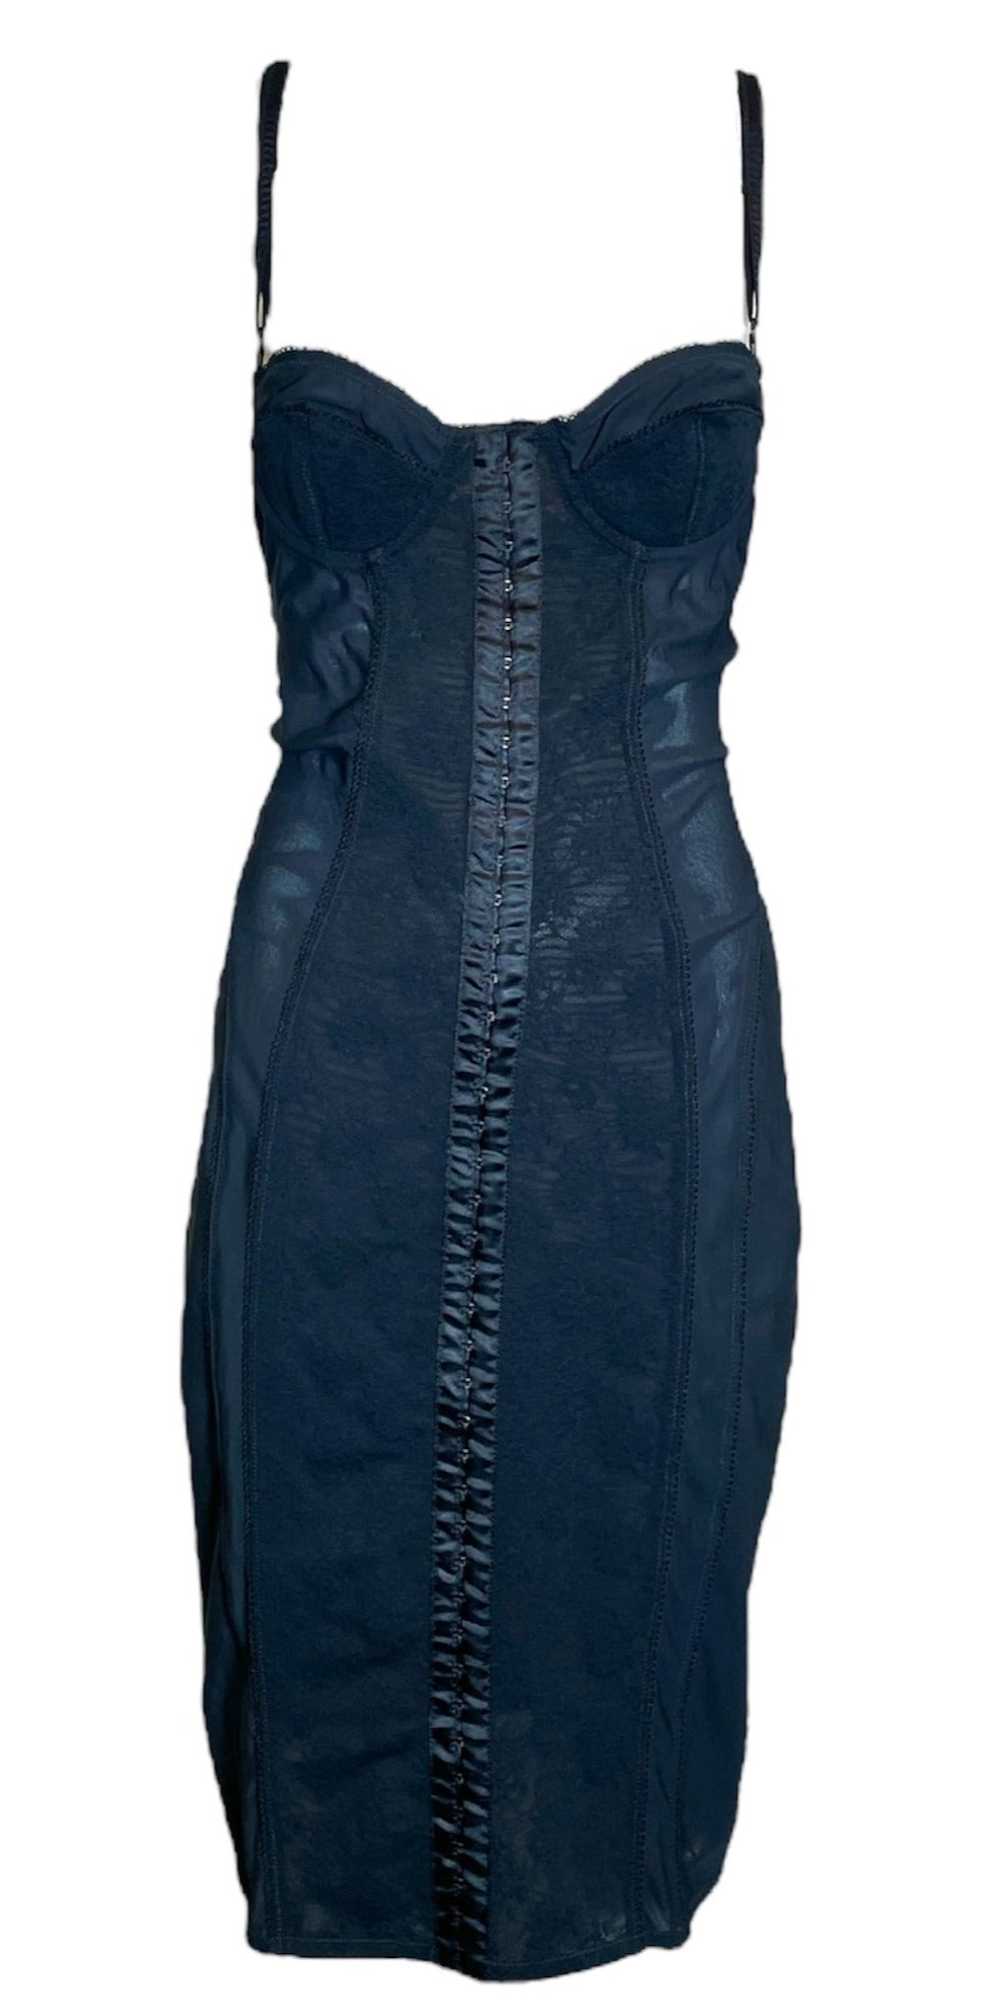 Dolce & Gabbana Y2K Black Mesh Lingerie Dress wit… - image 1